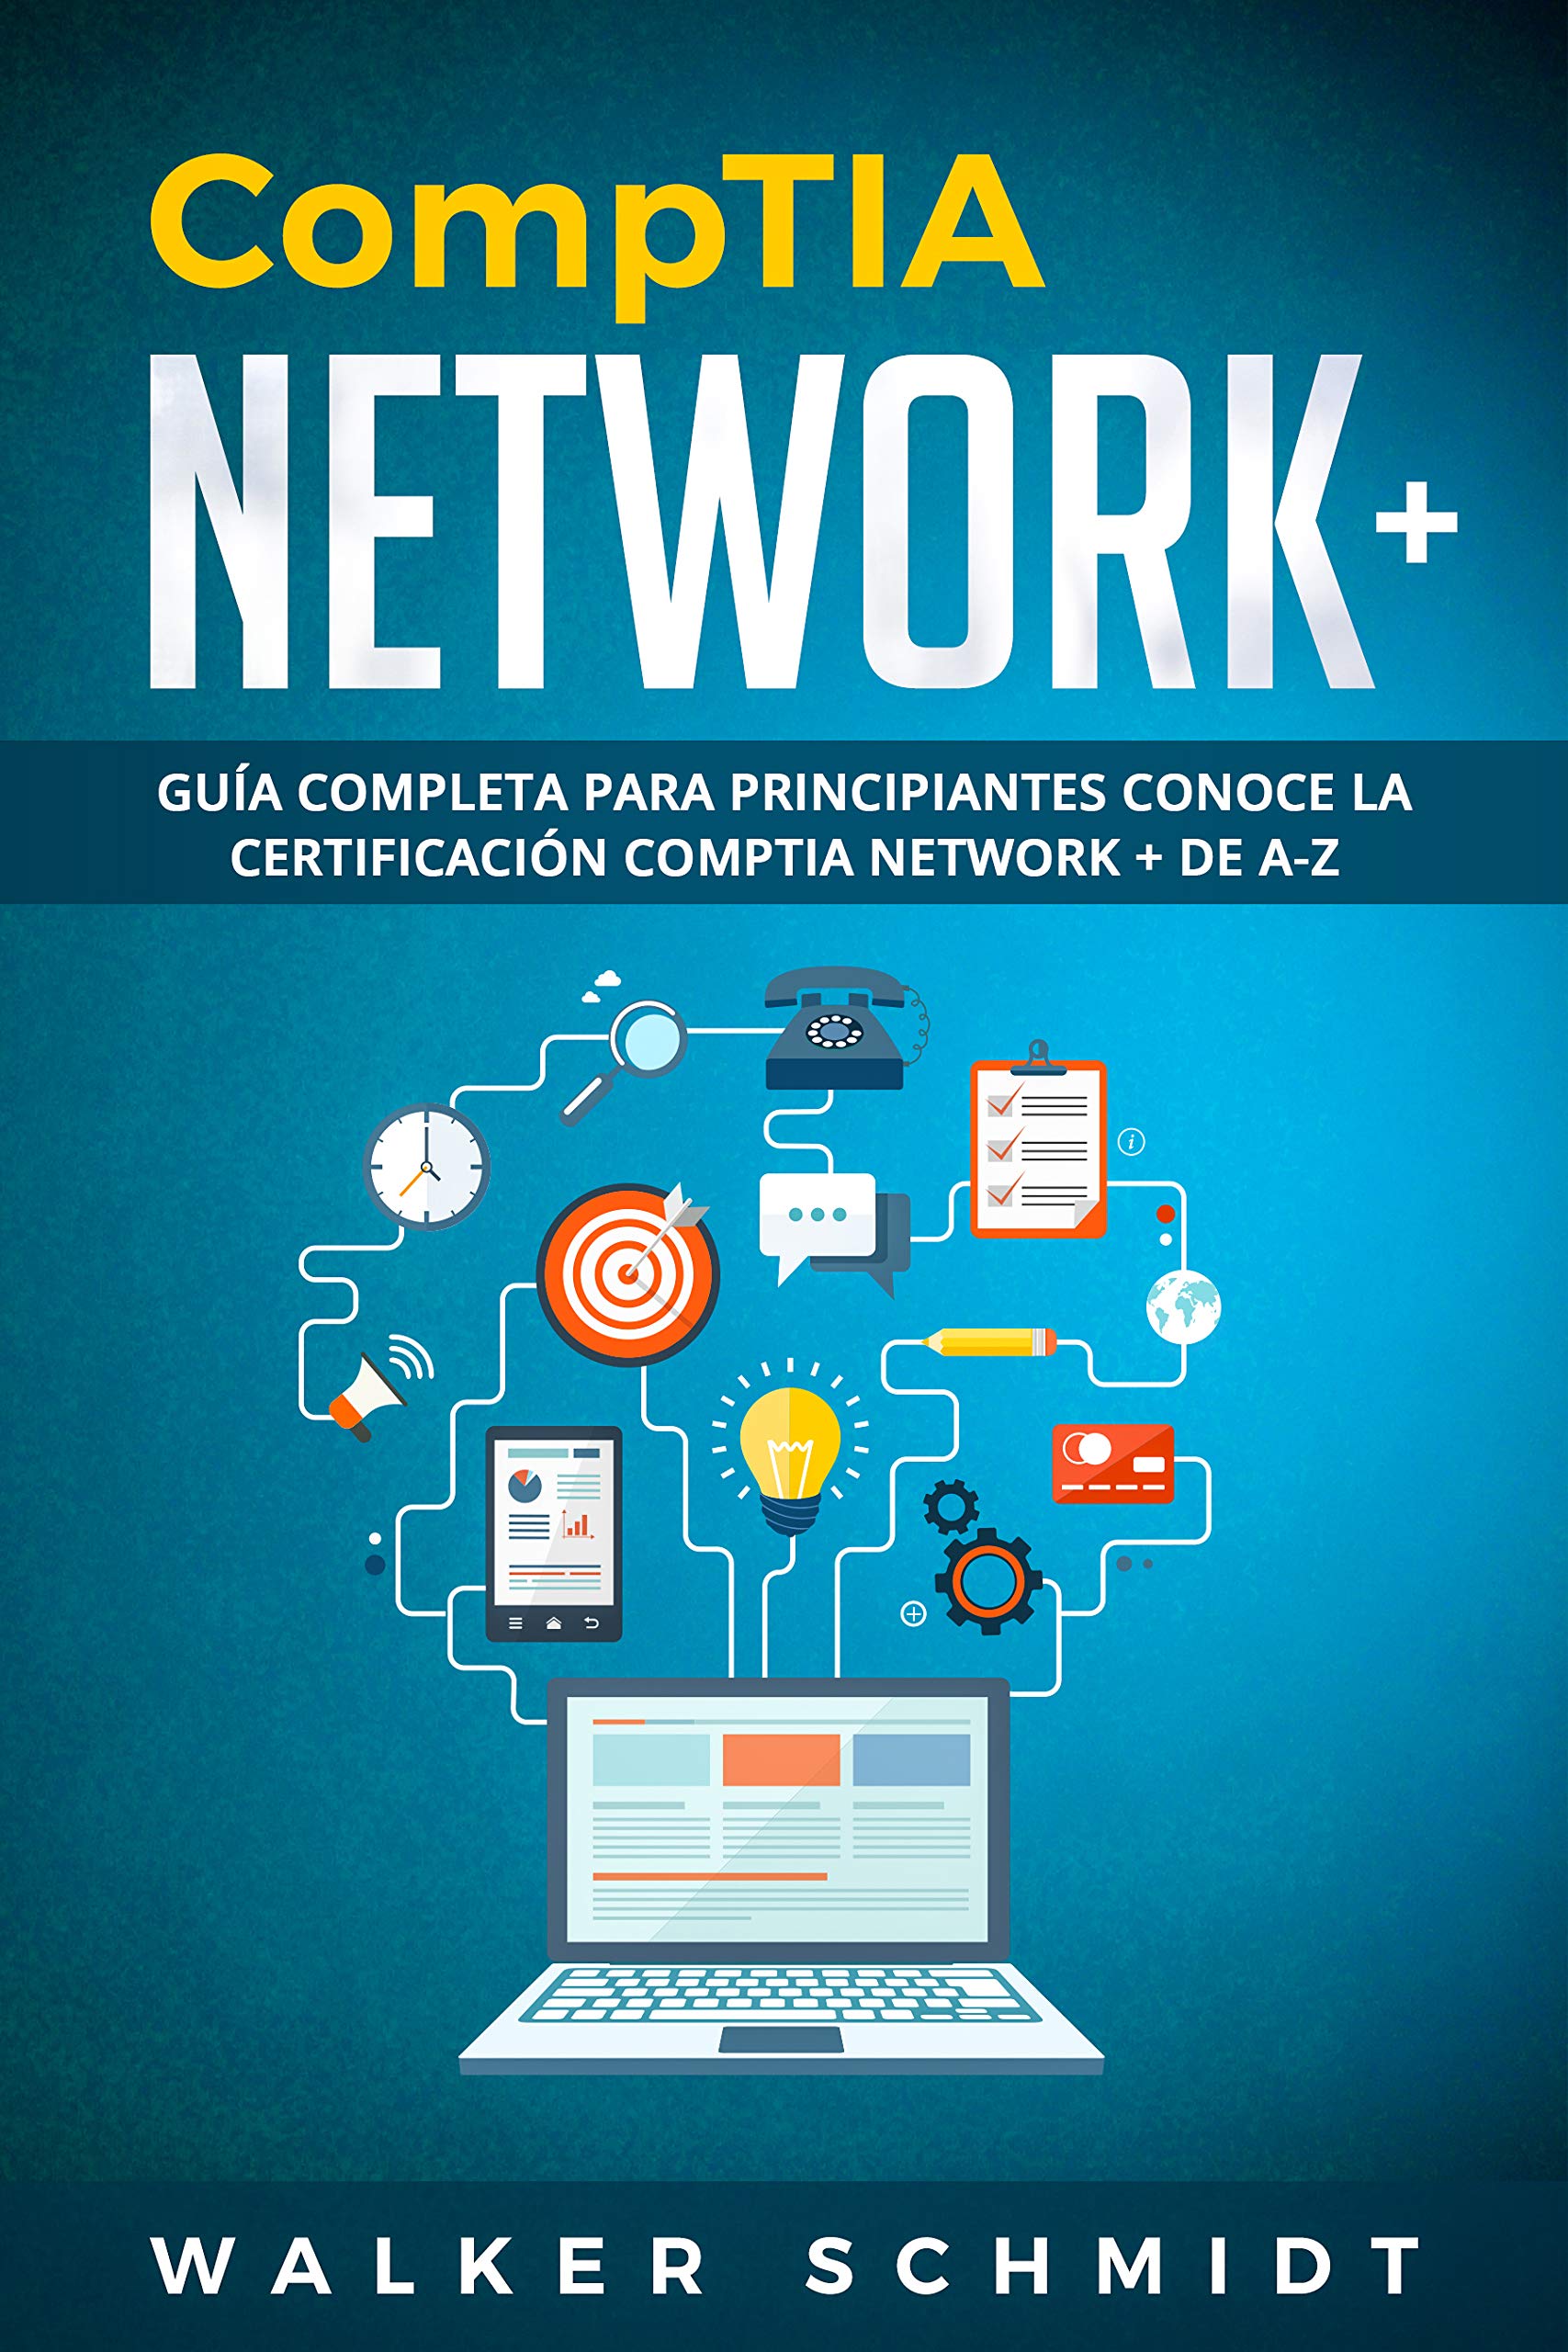 CompTIA Network+: Guía Completa Para Principiantes Conoce La Certificación CompTia Network + De A-Z (Libro En Español / CompTIA Network+ Spanish Book Version) ... (Comptia Network+ (Spanish edition) nº 1)